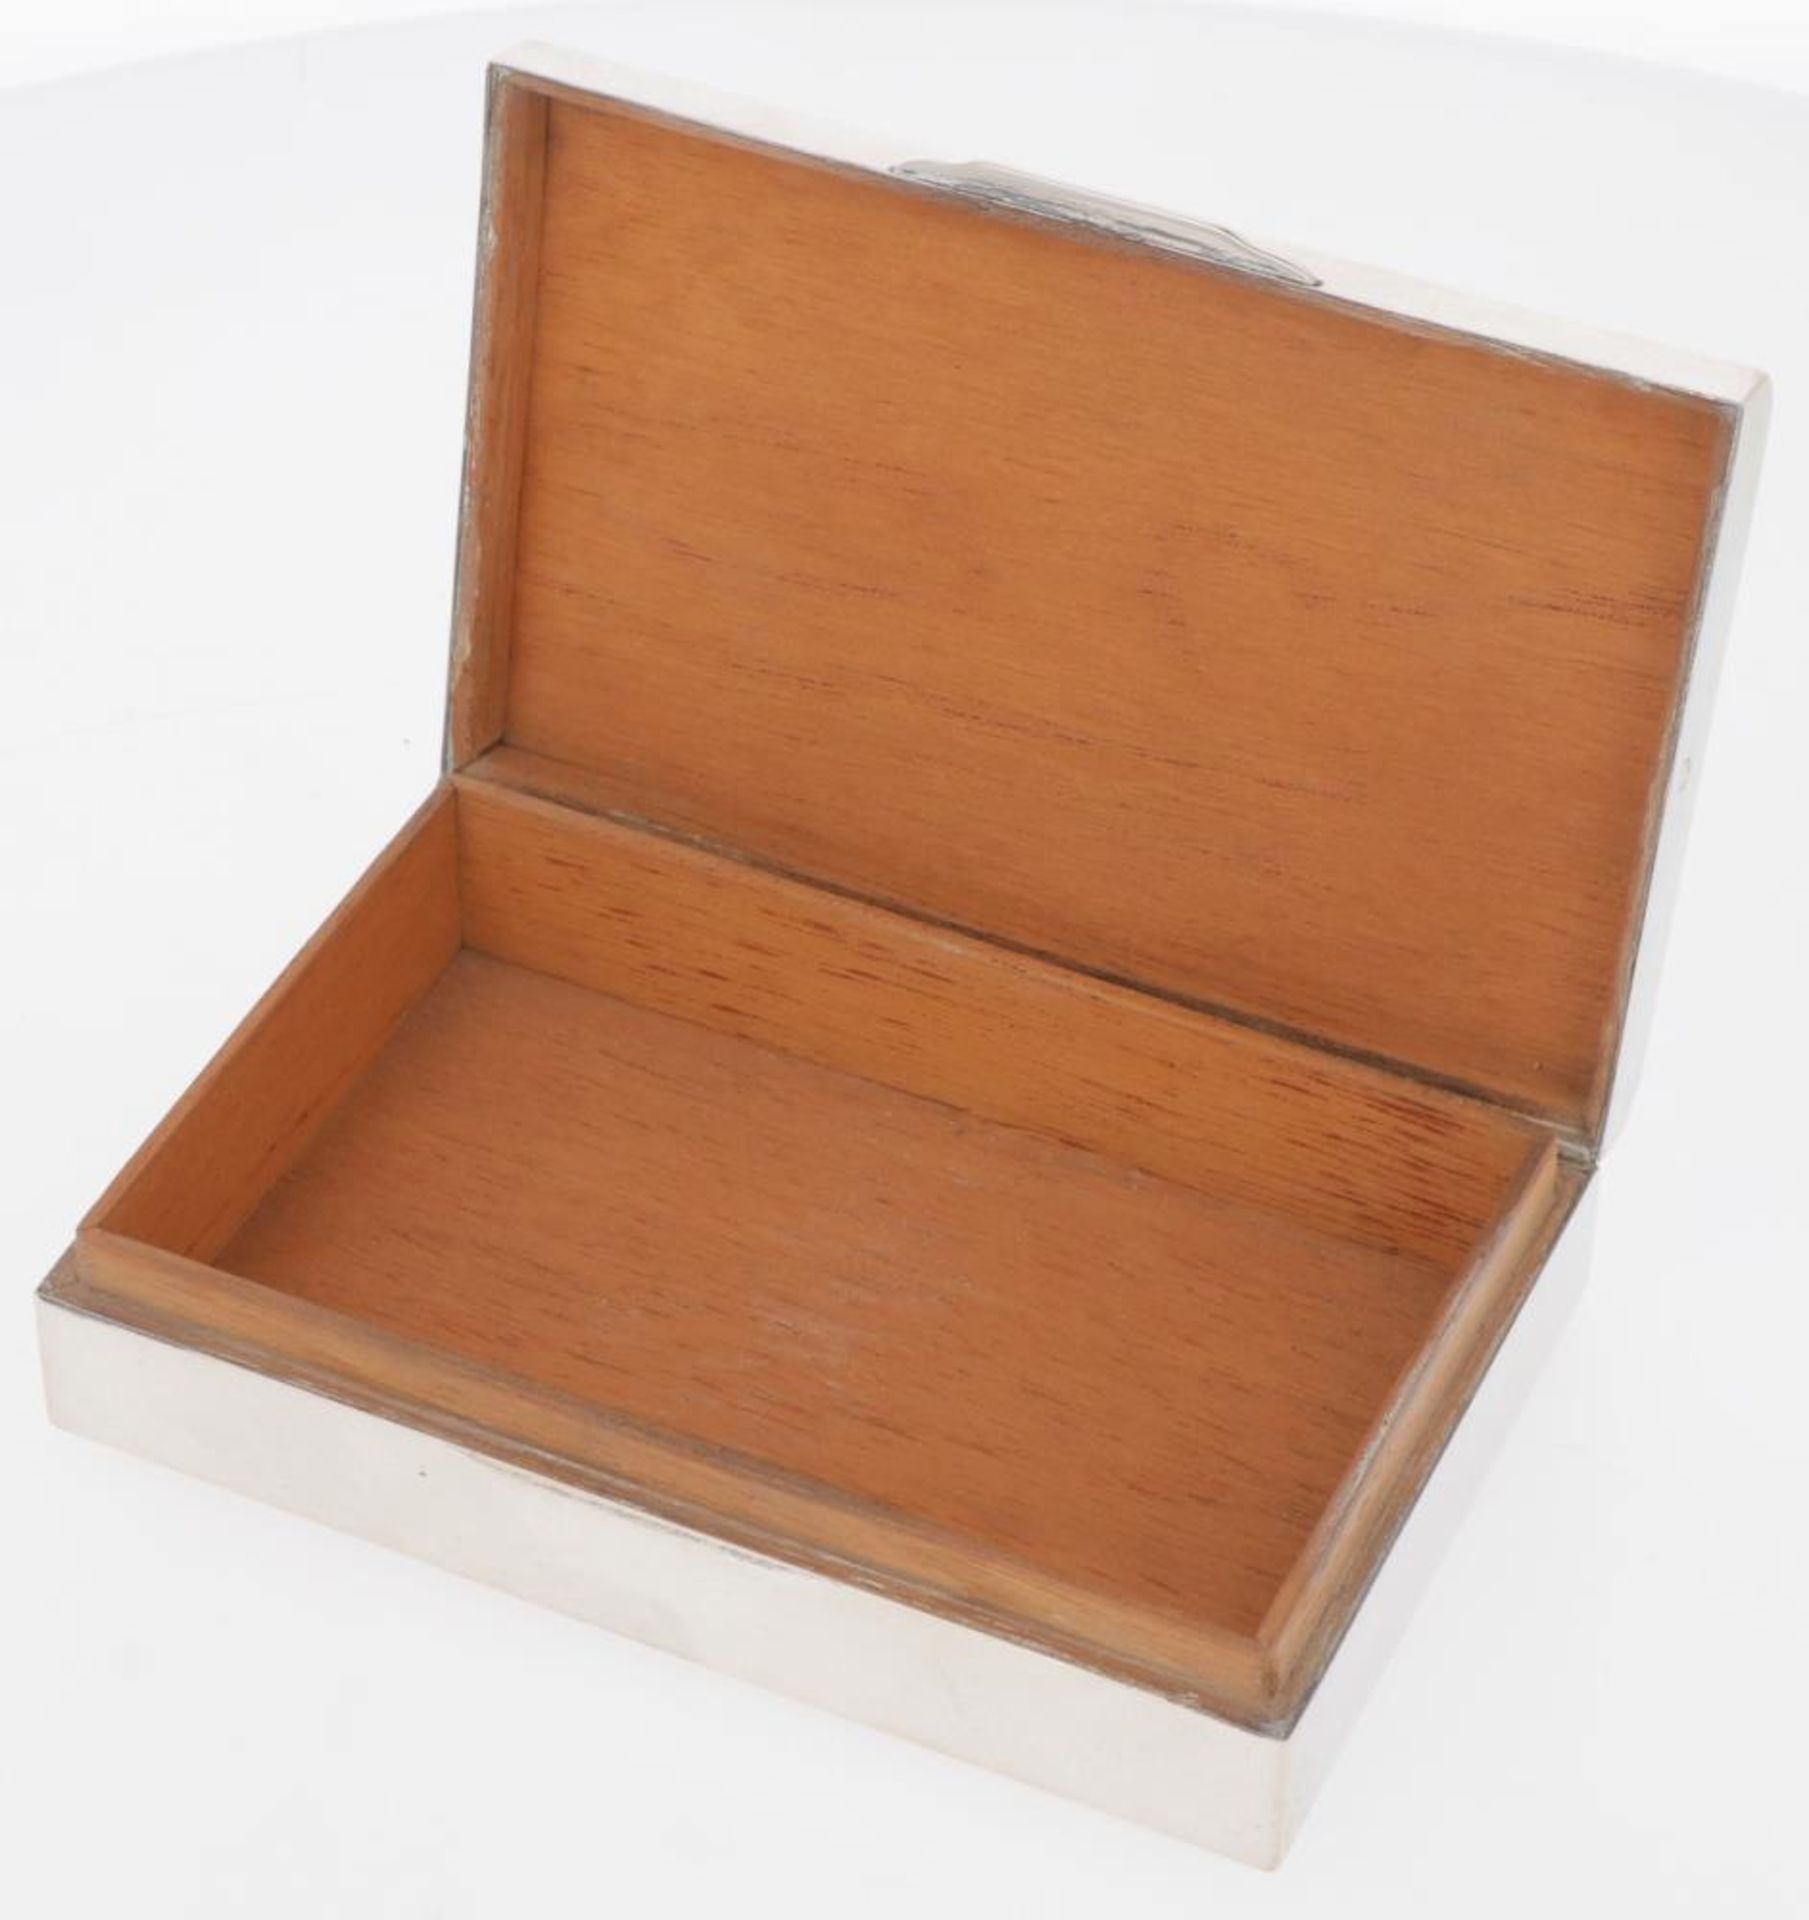 Cigar box silver. - Image 2 of 3